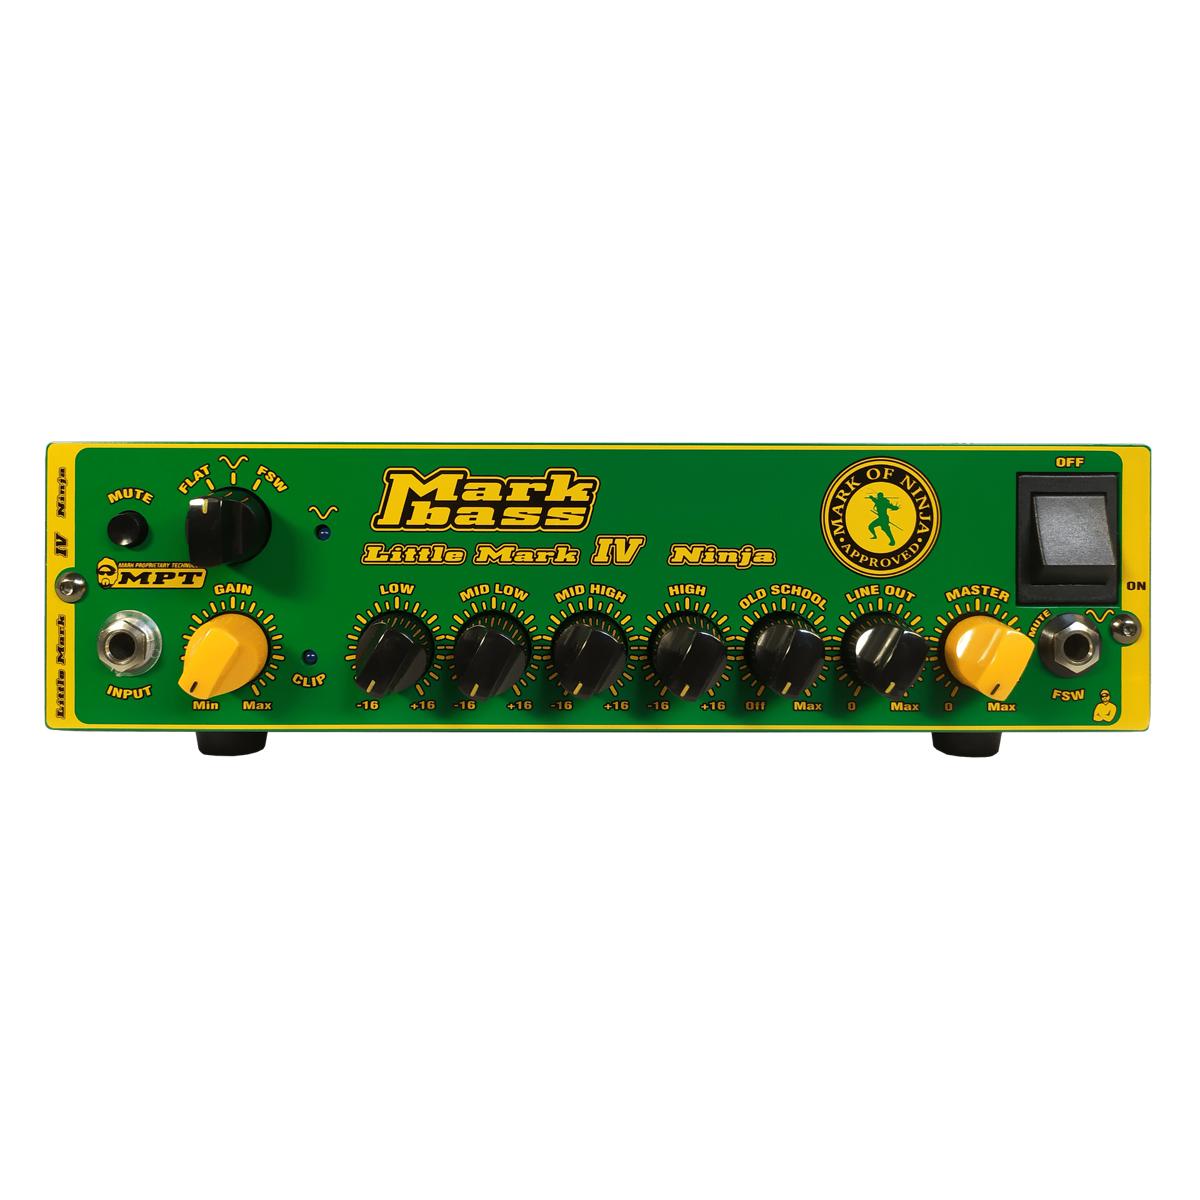 Mark Bass Little Mark IV Ninja Bass Guitar Amplifier 1000w Richard Bona Approved Amp Head